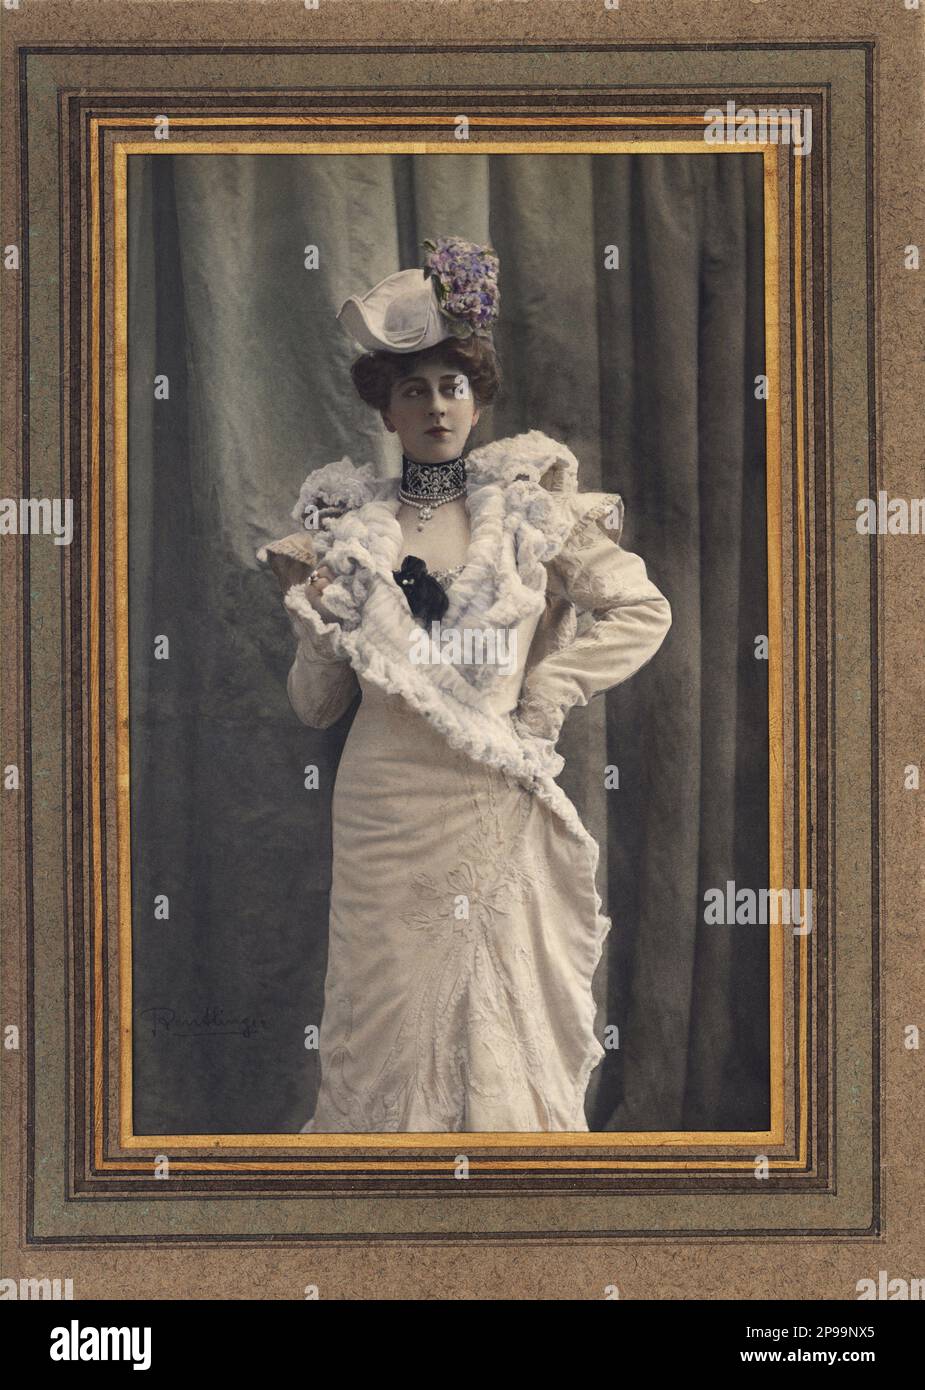 1900 ca , Parigi , Francia: Una bella donna inestimata in abito teatro fantasia . Foto di REUTLINGER , Parigi , Francia . - Foto storiche - foto storica - pizzo - pizzo - zignon - BELLE EPOQUE - decolleté - collana - collana - scollatura - ritratto - ritratto - Francia - MODA - moda - moda - perle - perle - collana - collana - bijoux - gioielli - gioielli - gioielli - gioiello - gioielli - cappello - cappello - hortense - ortensia - anello - anello - demi-mondaine - vestito abito bianco - abito bianco --- Archivio GBB Foto Stock